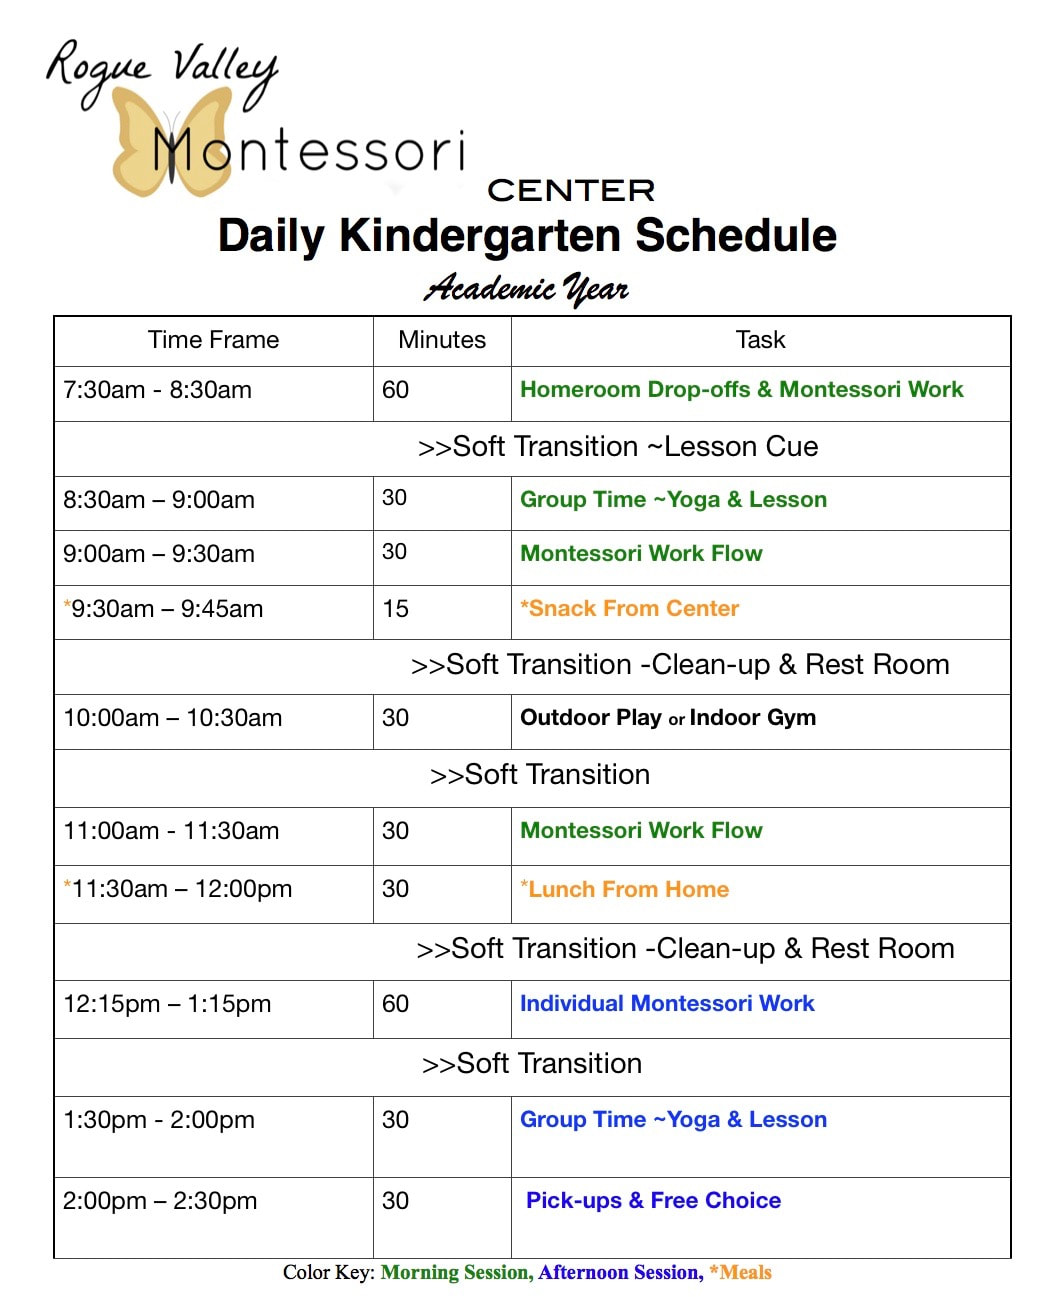 Montessori School Schedule -Preschool and Kindergarten - ROUGE VALLEY ...